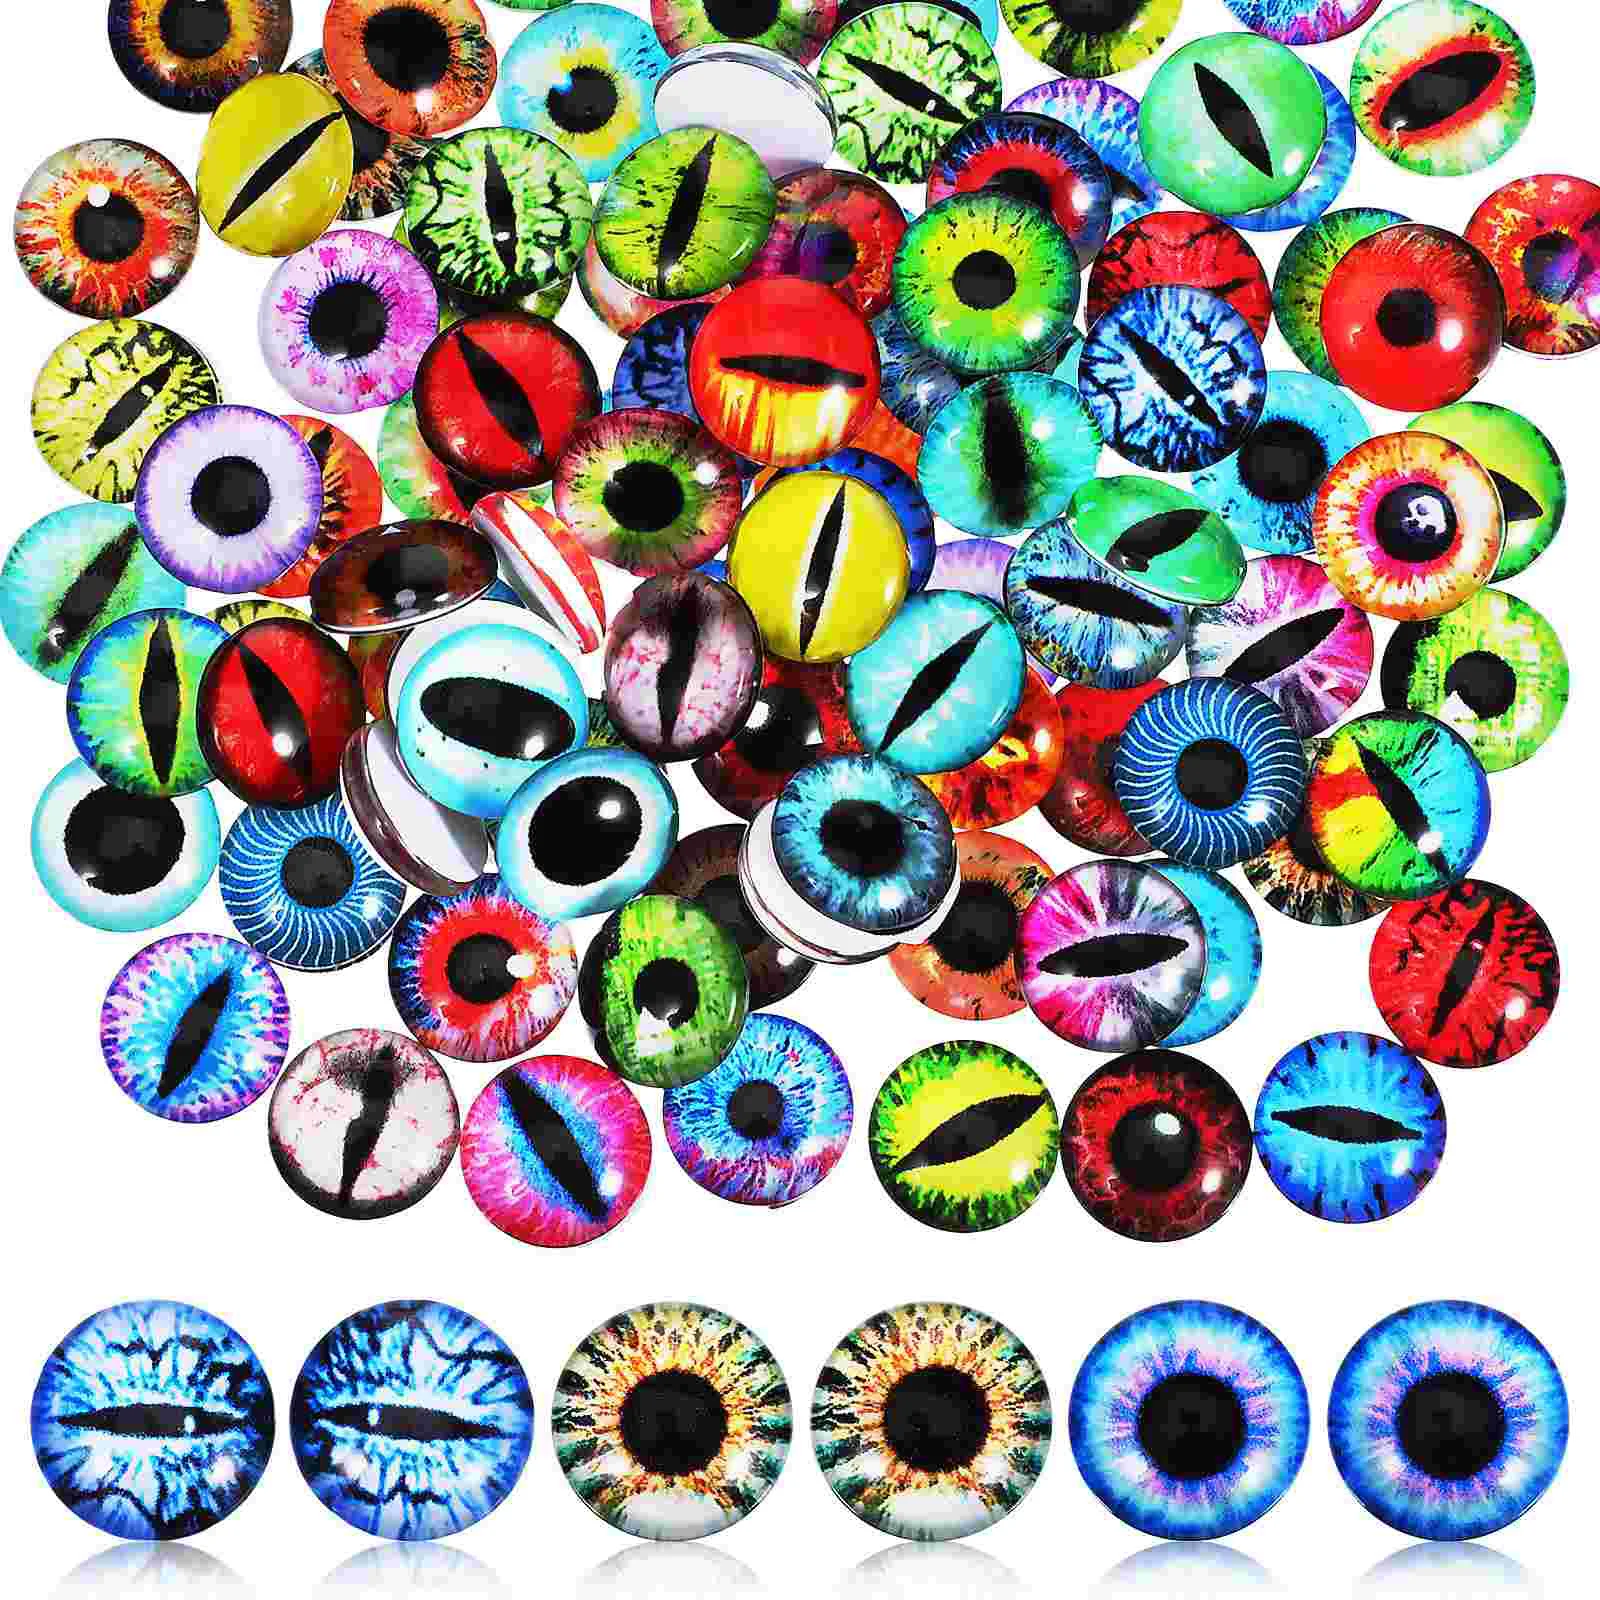 

100 Pcs Glass Eyes Craft Eyes Animal Eyes Eyes Crochet Animal Eyes Diy Eyeballs For Stuffed Animals